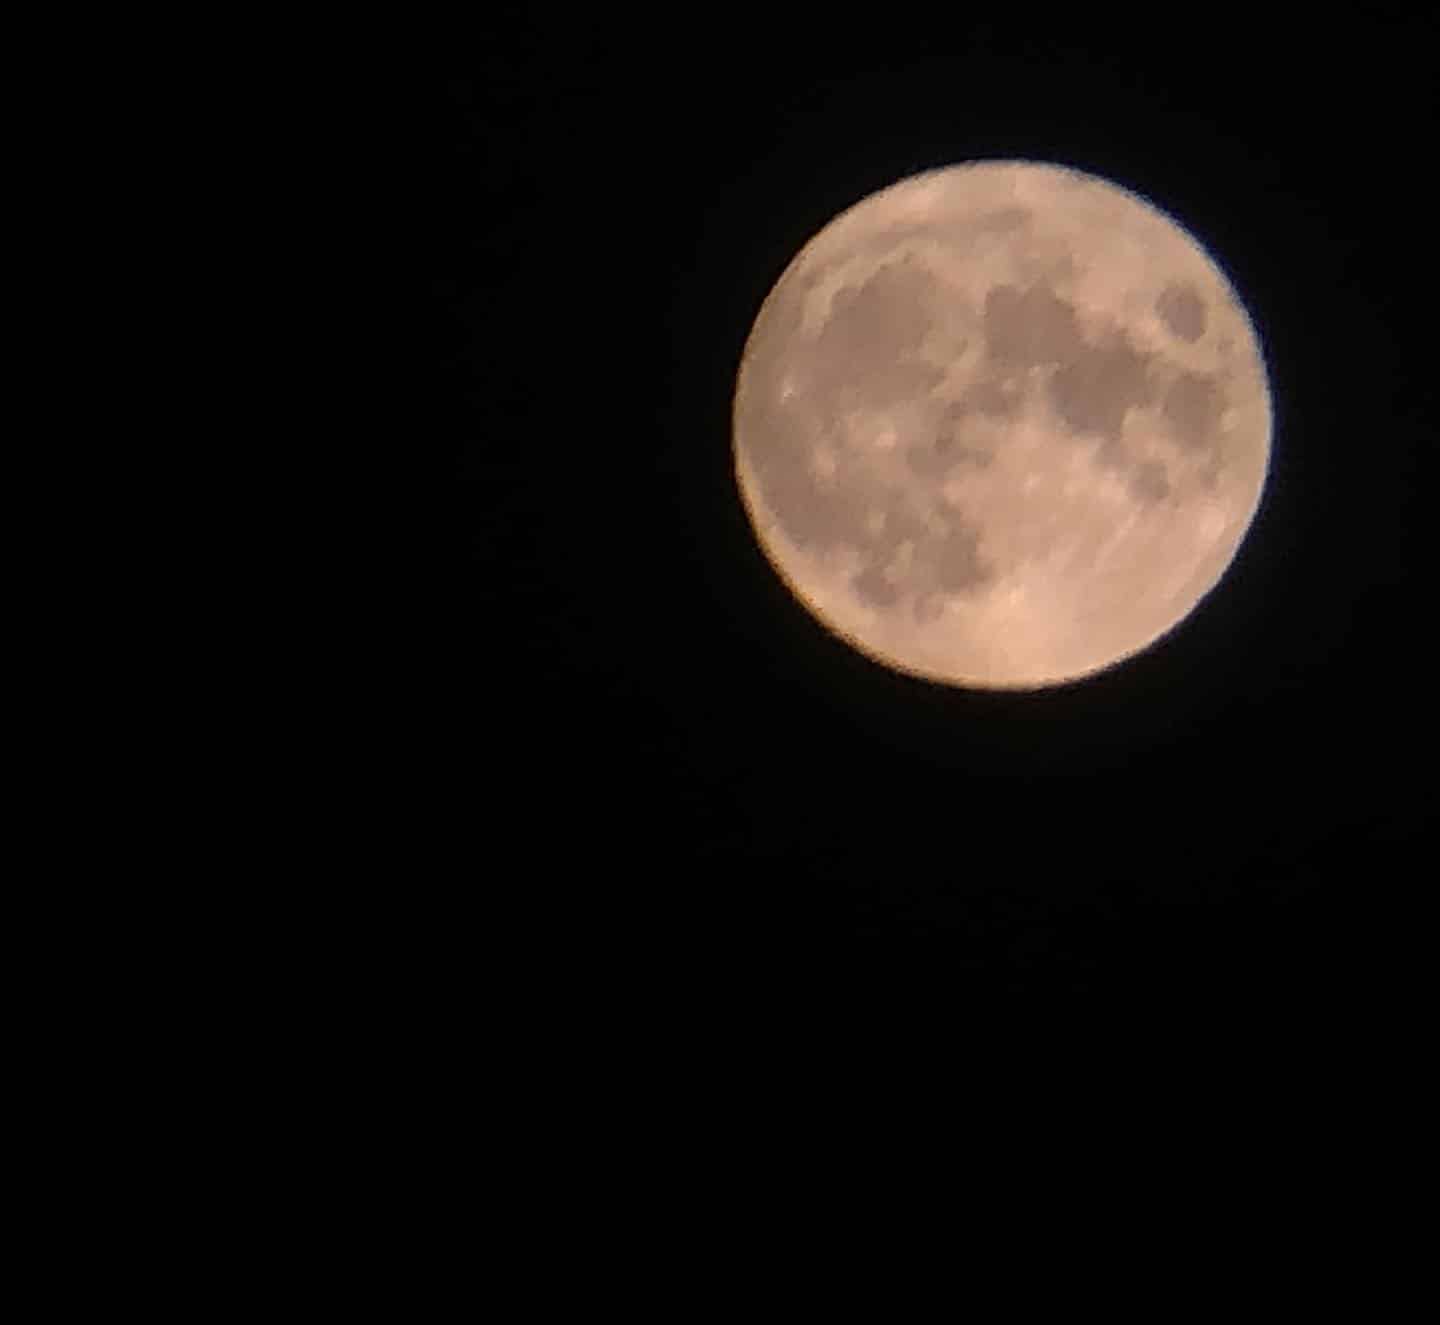 ¡La pillé! Es la mejor foto que hecho a la luna con un teléfono móvil.#leonesp #luna #sinfiltros #moon #picofthenight